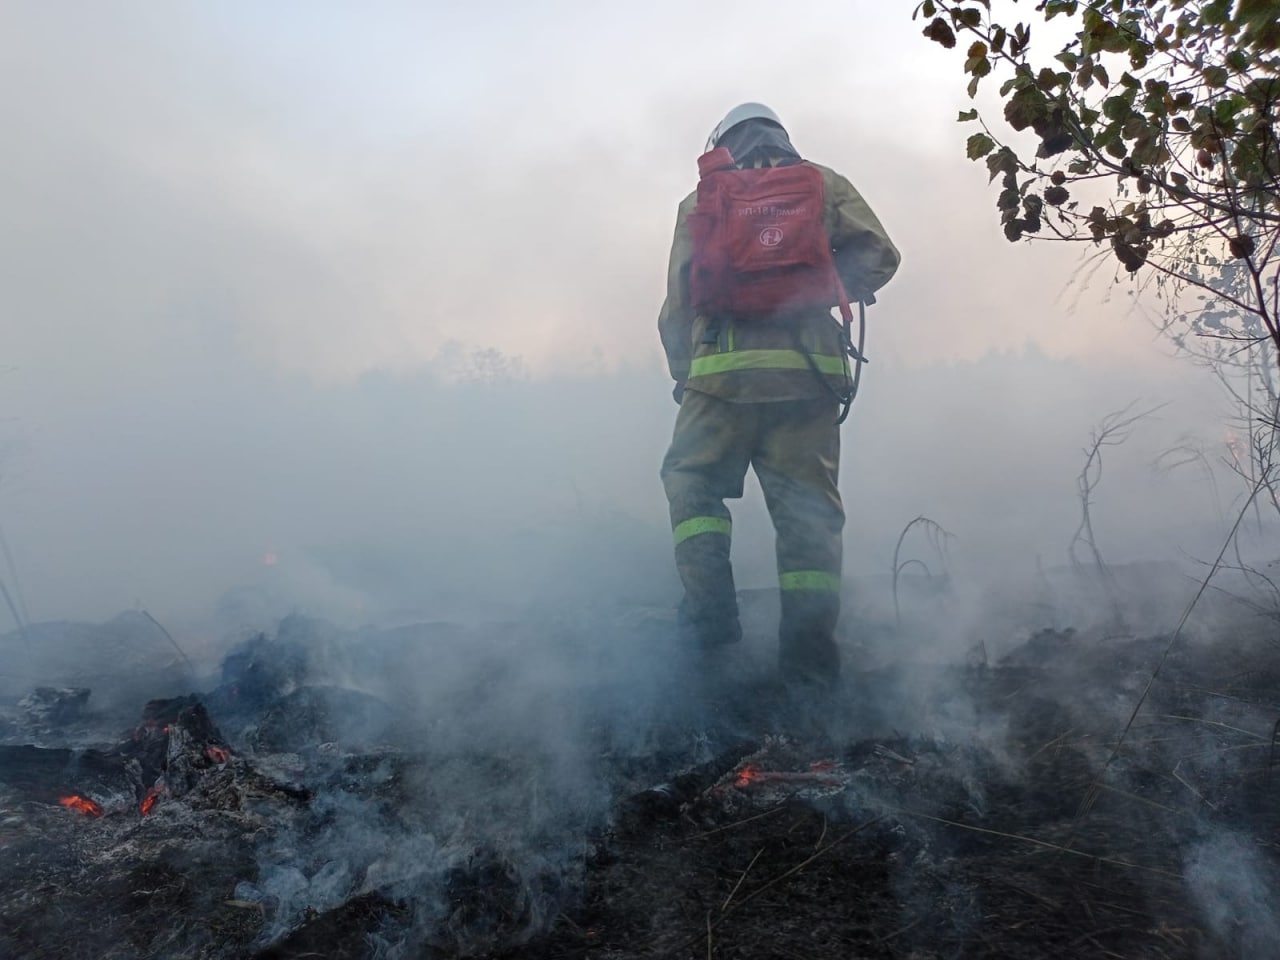 Борьба с природными пожарами в Оренбургской области продолжается